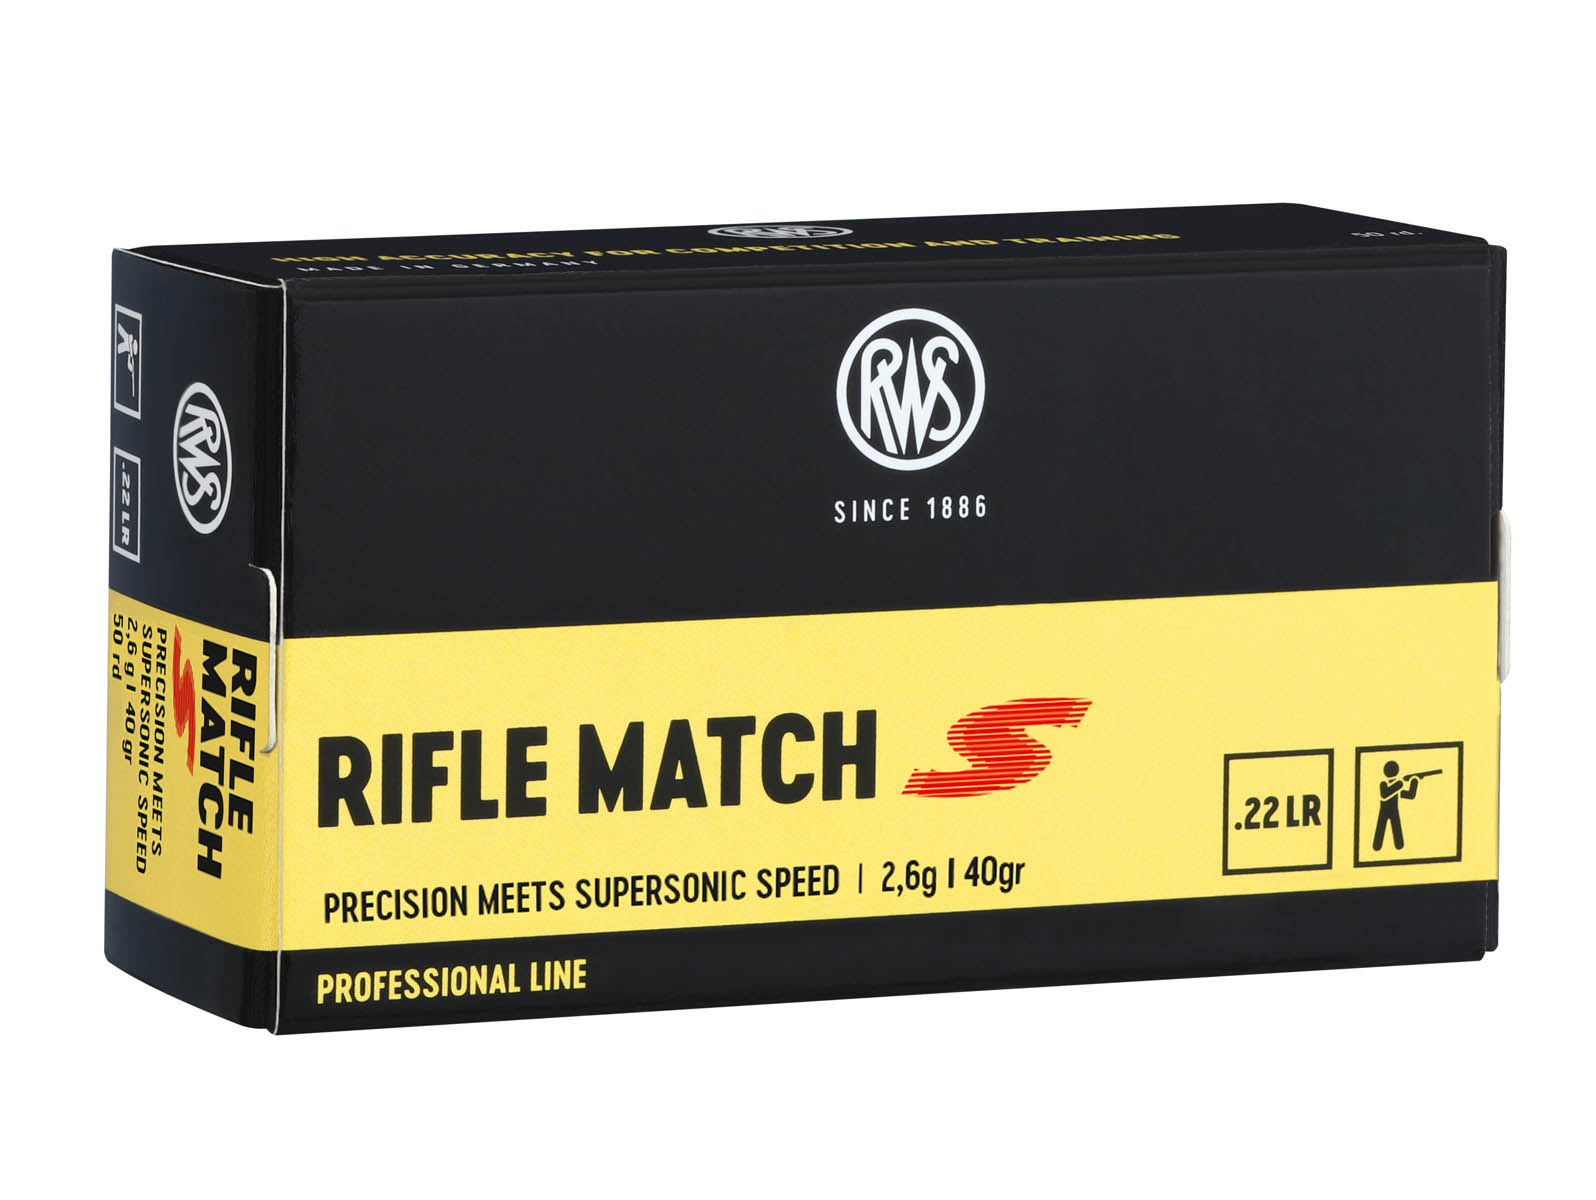 Die RWS Rifle Match S 2,6g - 40gr. überzeugt durch ihre außerordentliche Präzision